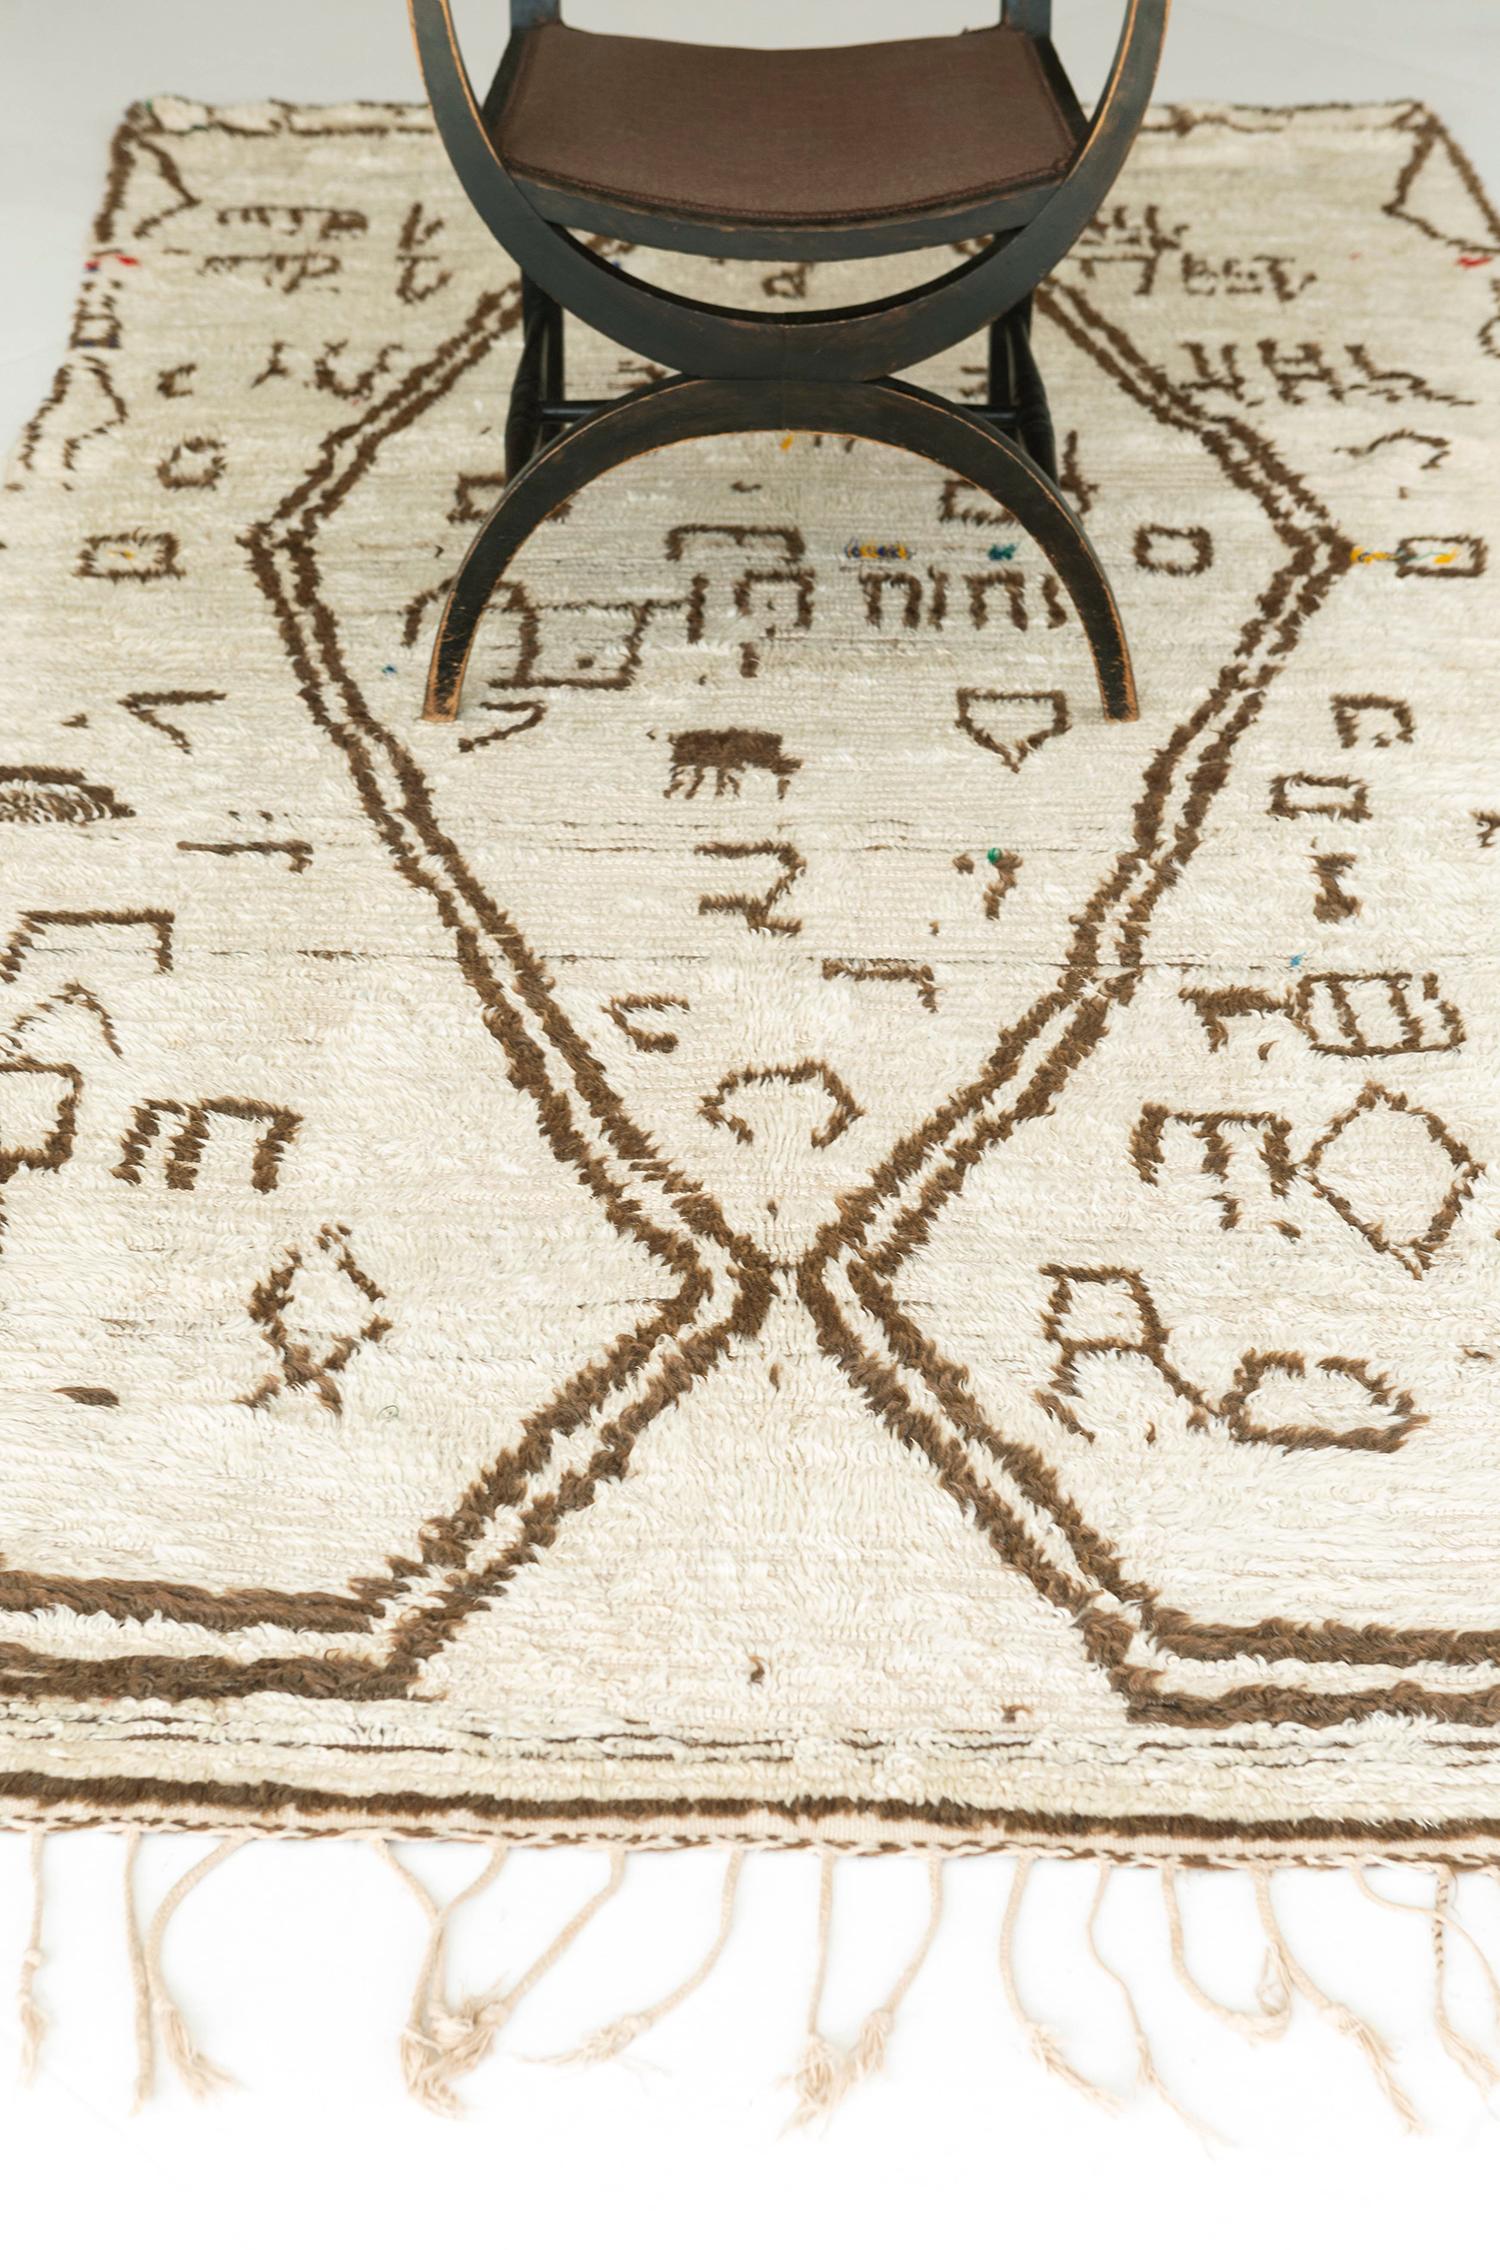 Vous ne vous tromperez jamais avec ce tapis marocain vintage de la Tribu Azilal qui en dit long. Les tatouages berbères ambigus, les énormes chevrons et les symboles archaïques sont parfaitement représentés dans la laine ivoire. Une bonne